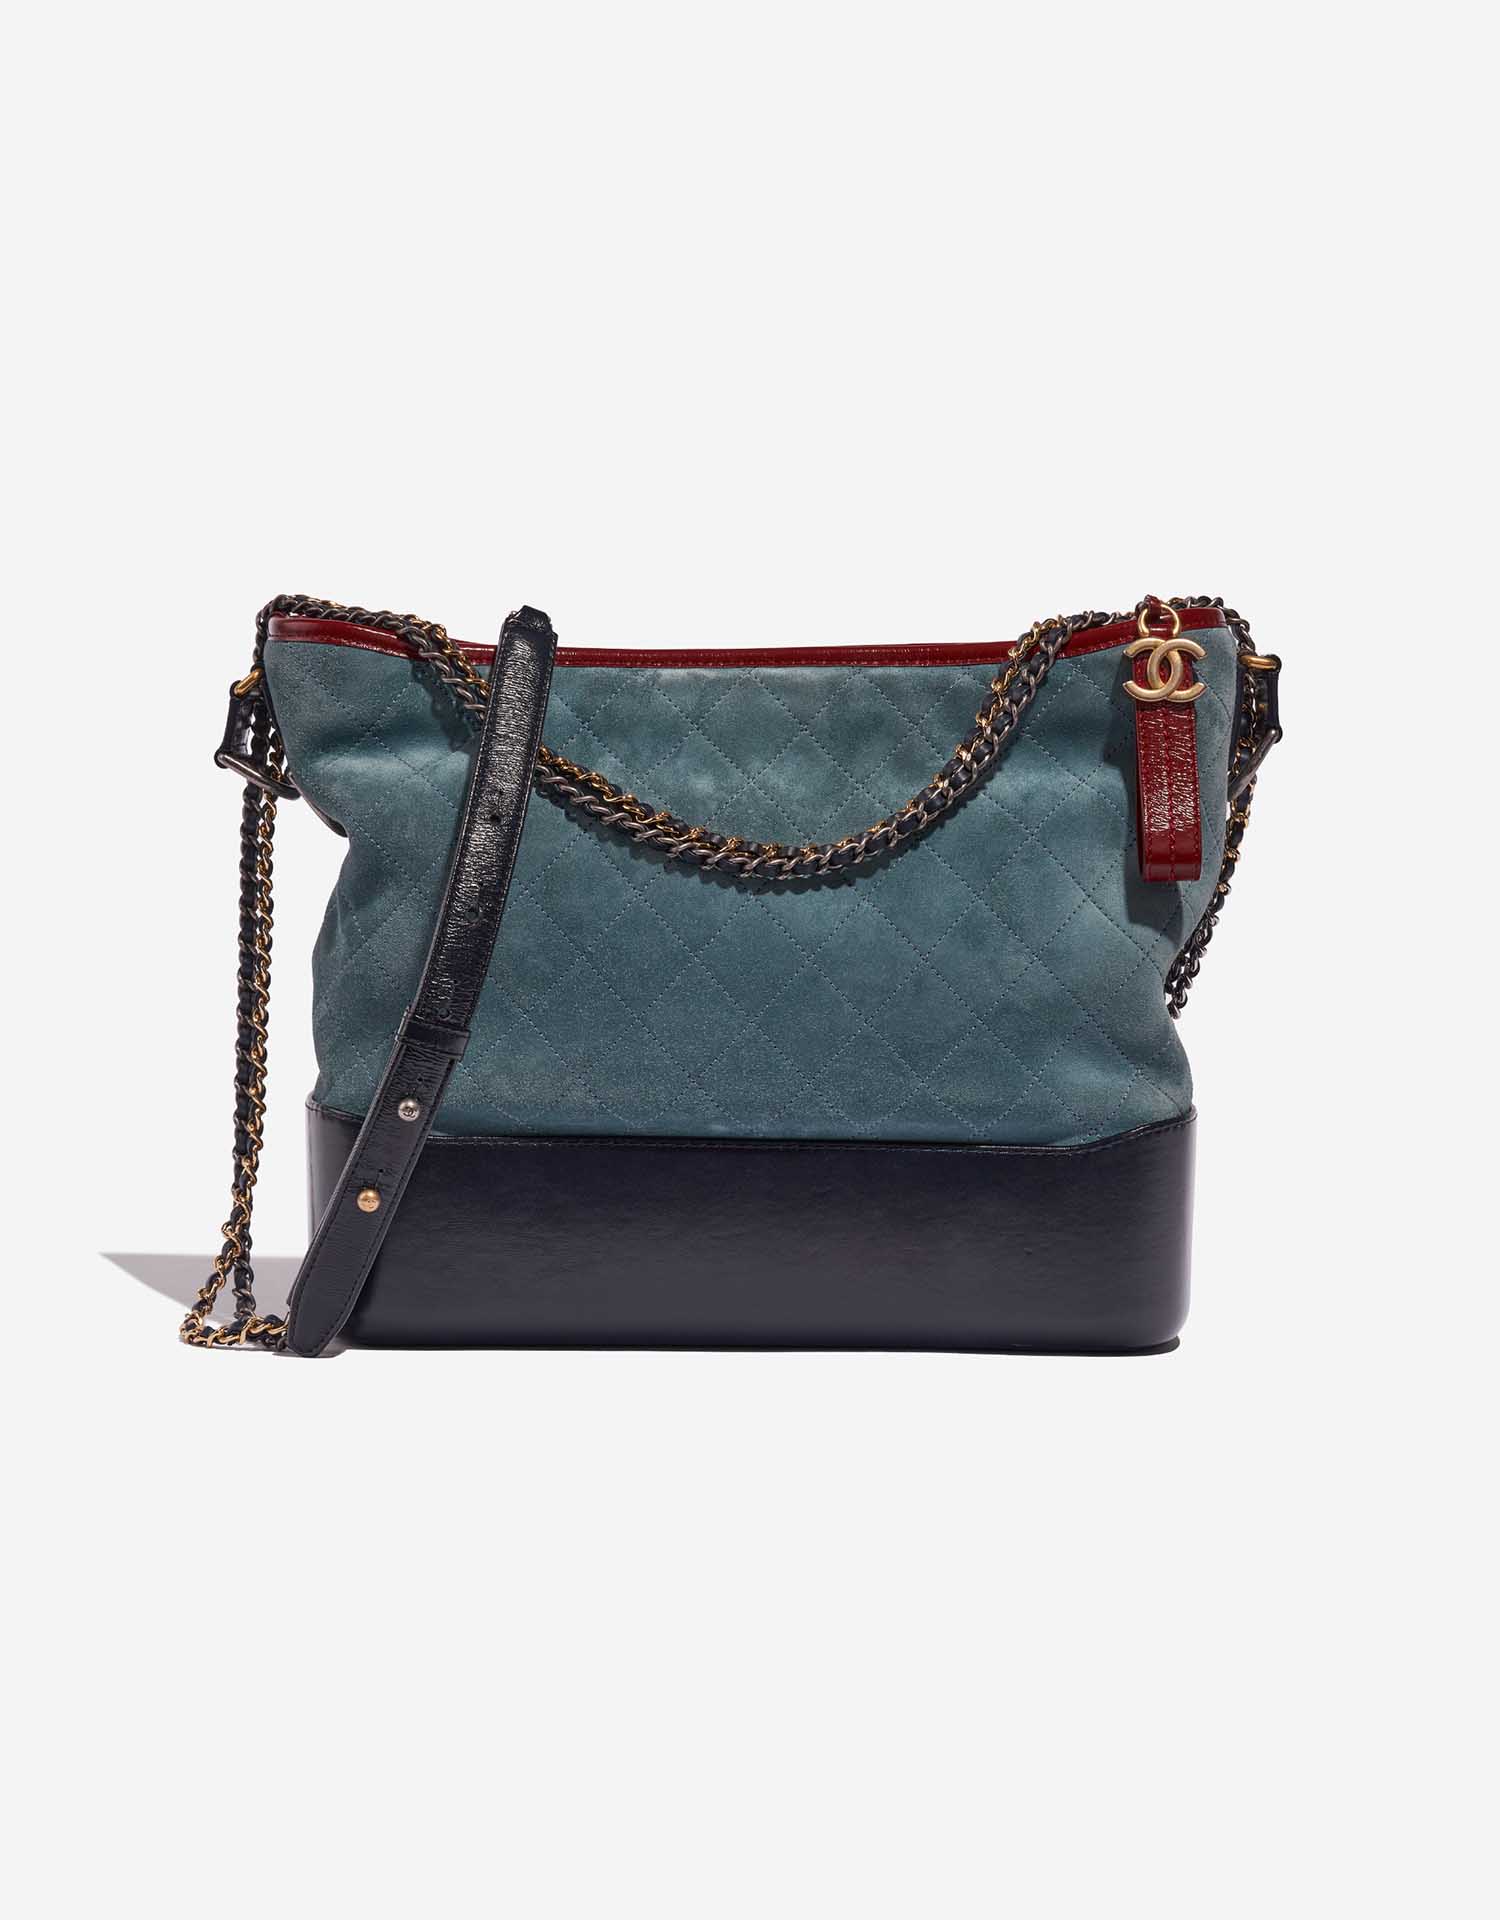 Chanel Large Blue Black Gabrielle Bag - Vintage Lux